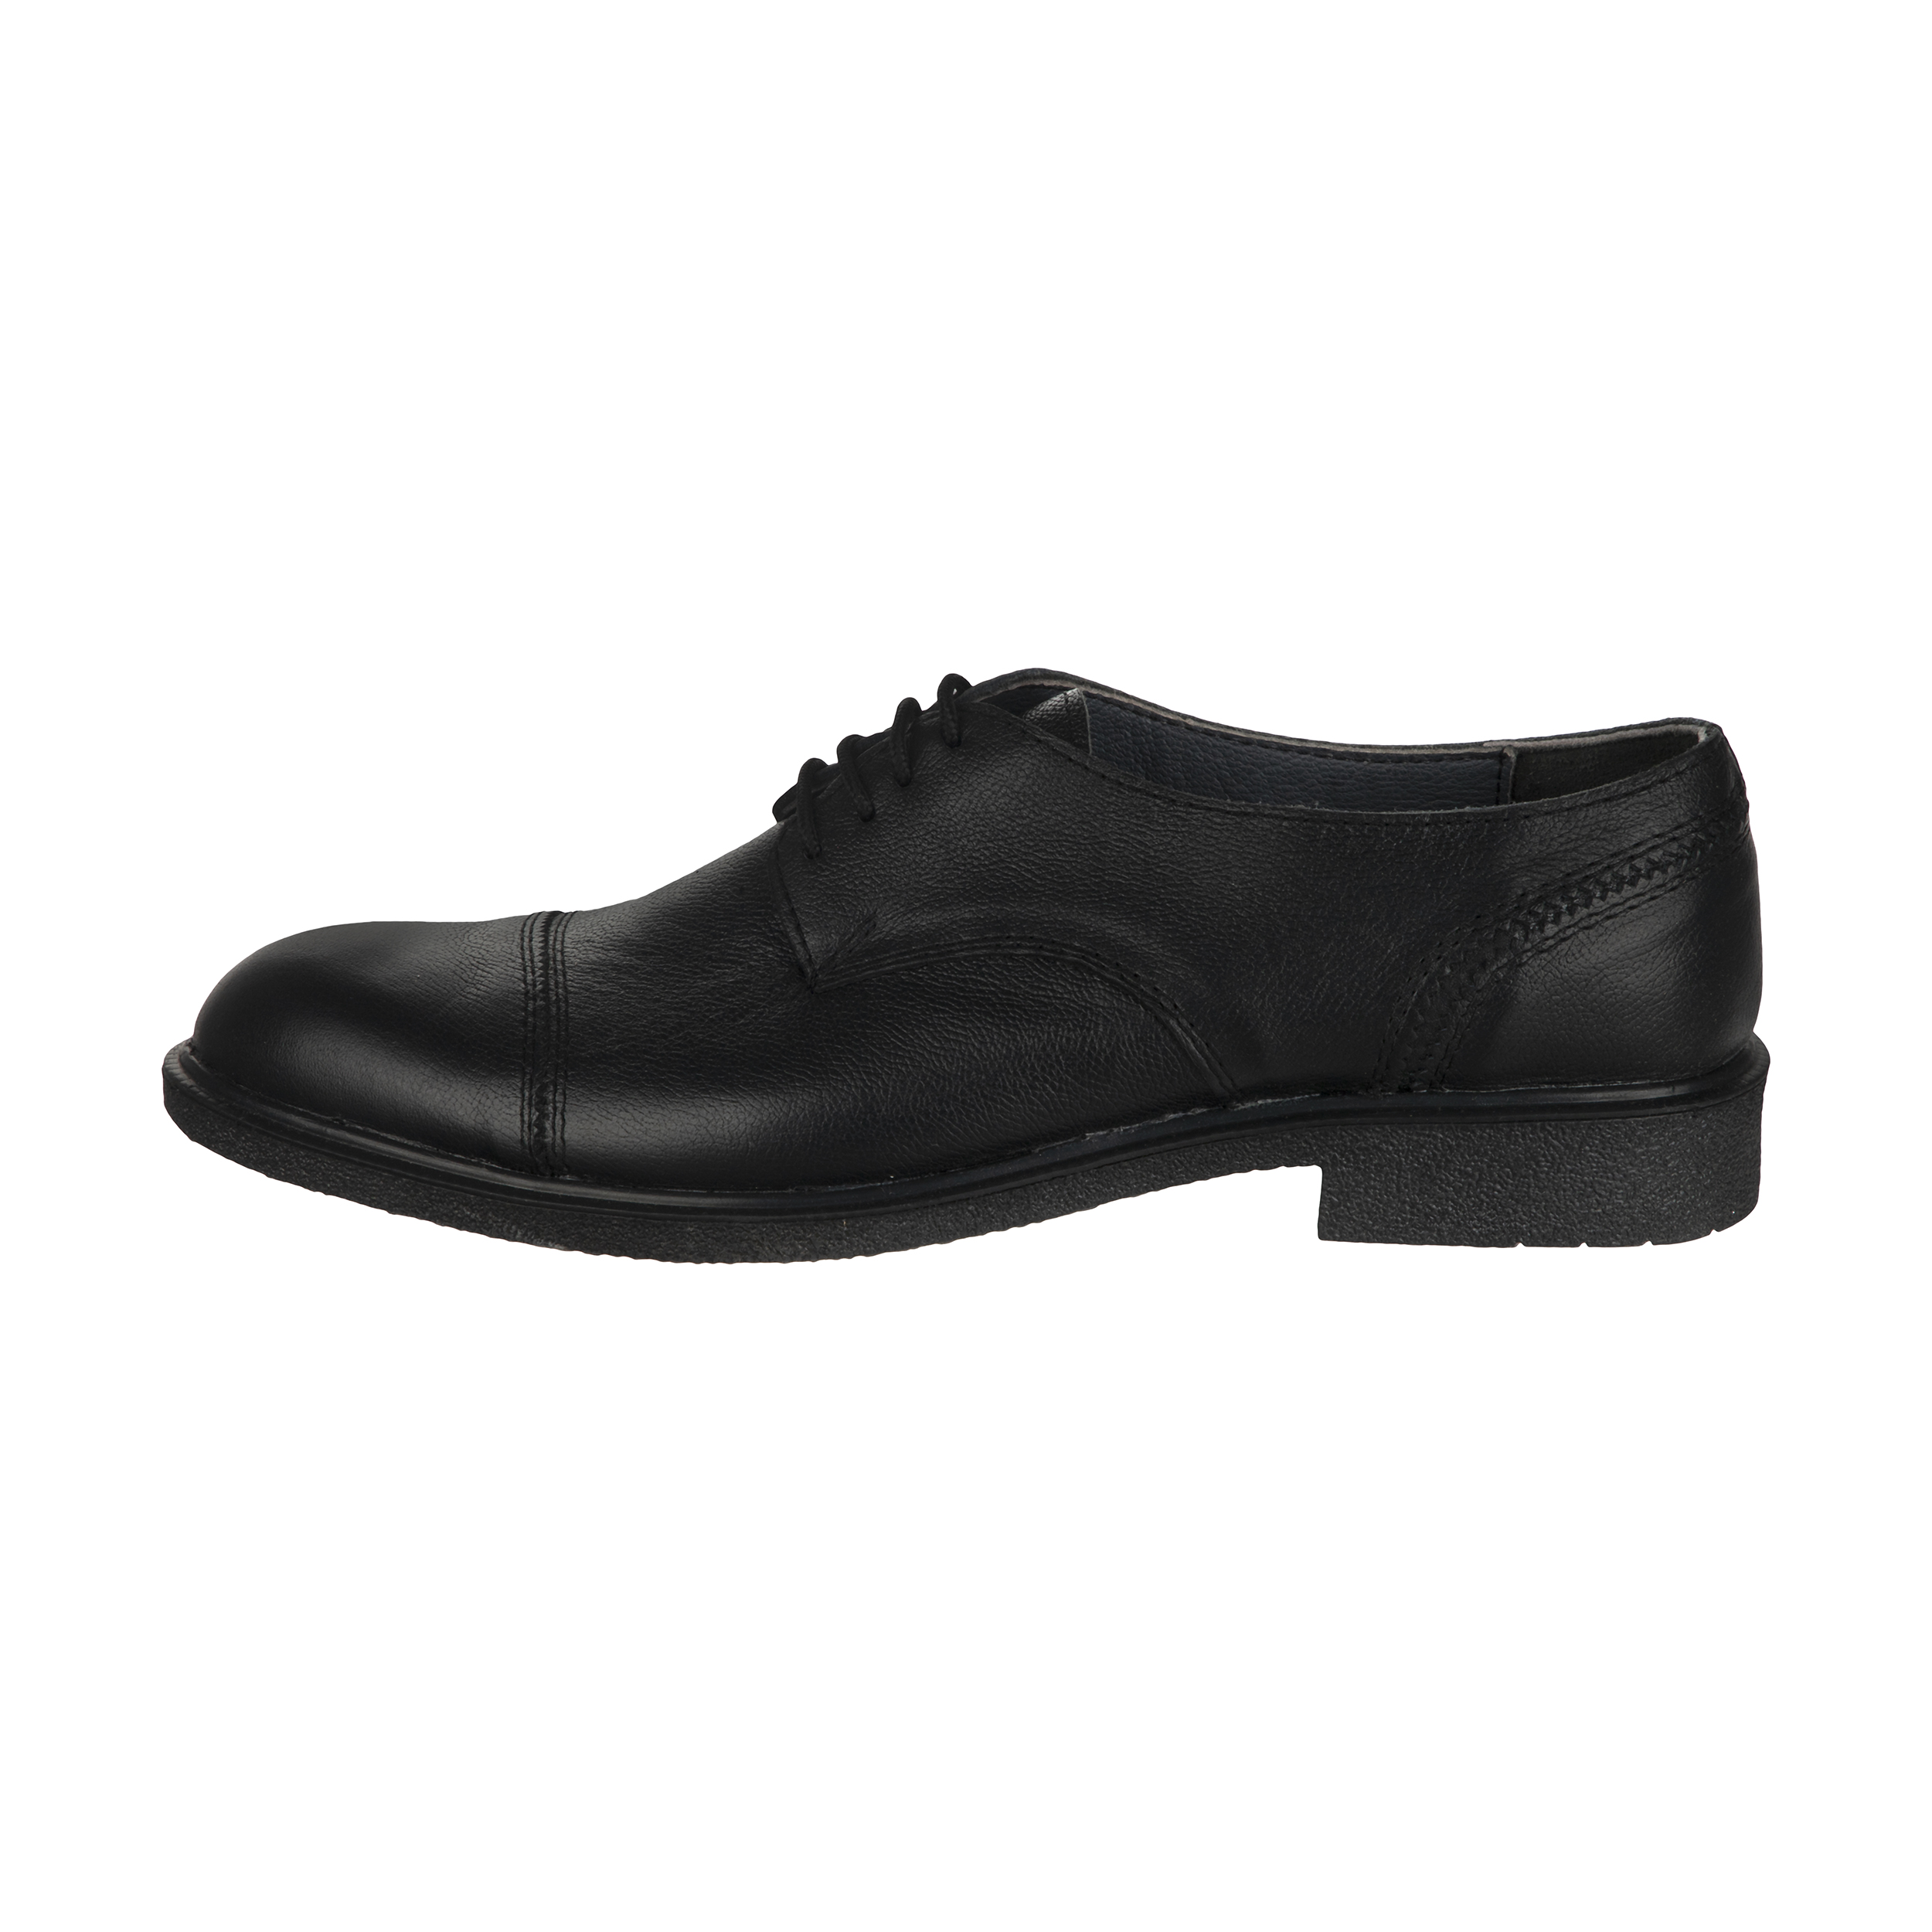  کفش مردانه سوته مدل 4870F503101 -  - 1